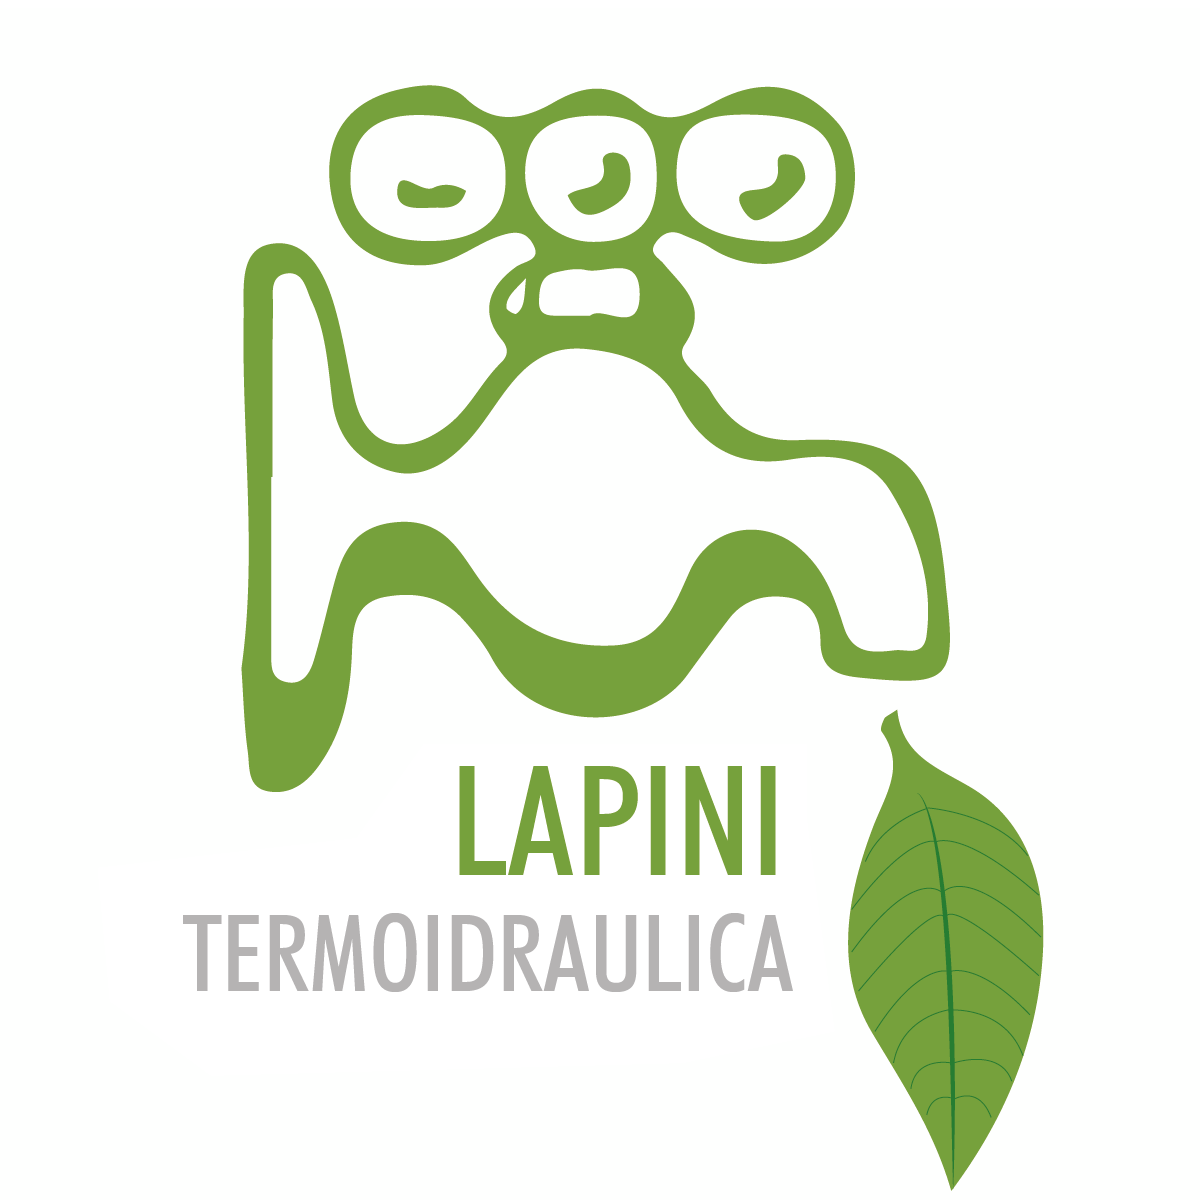 Termoidraulica Lapini